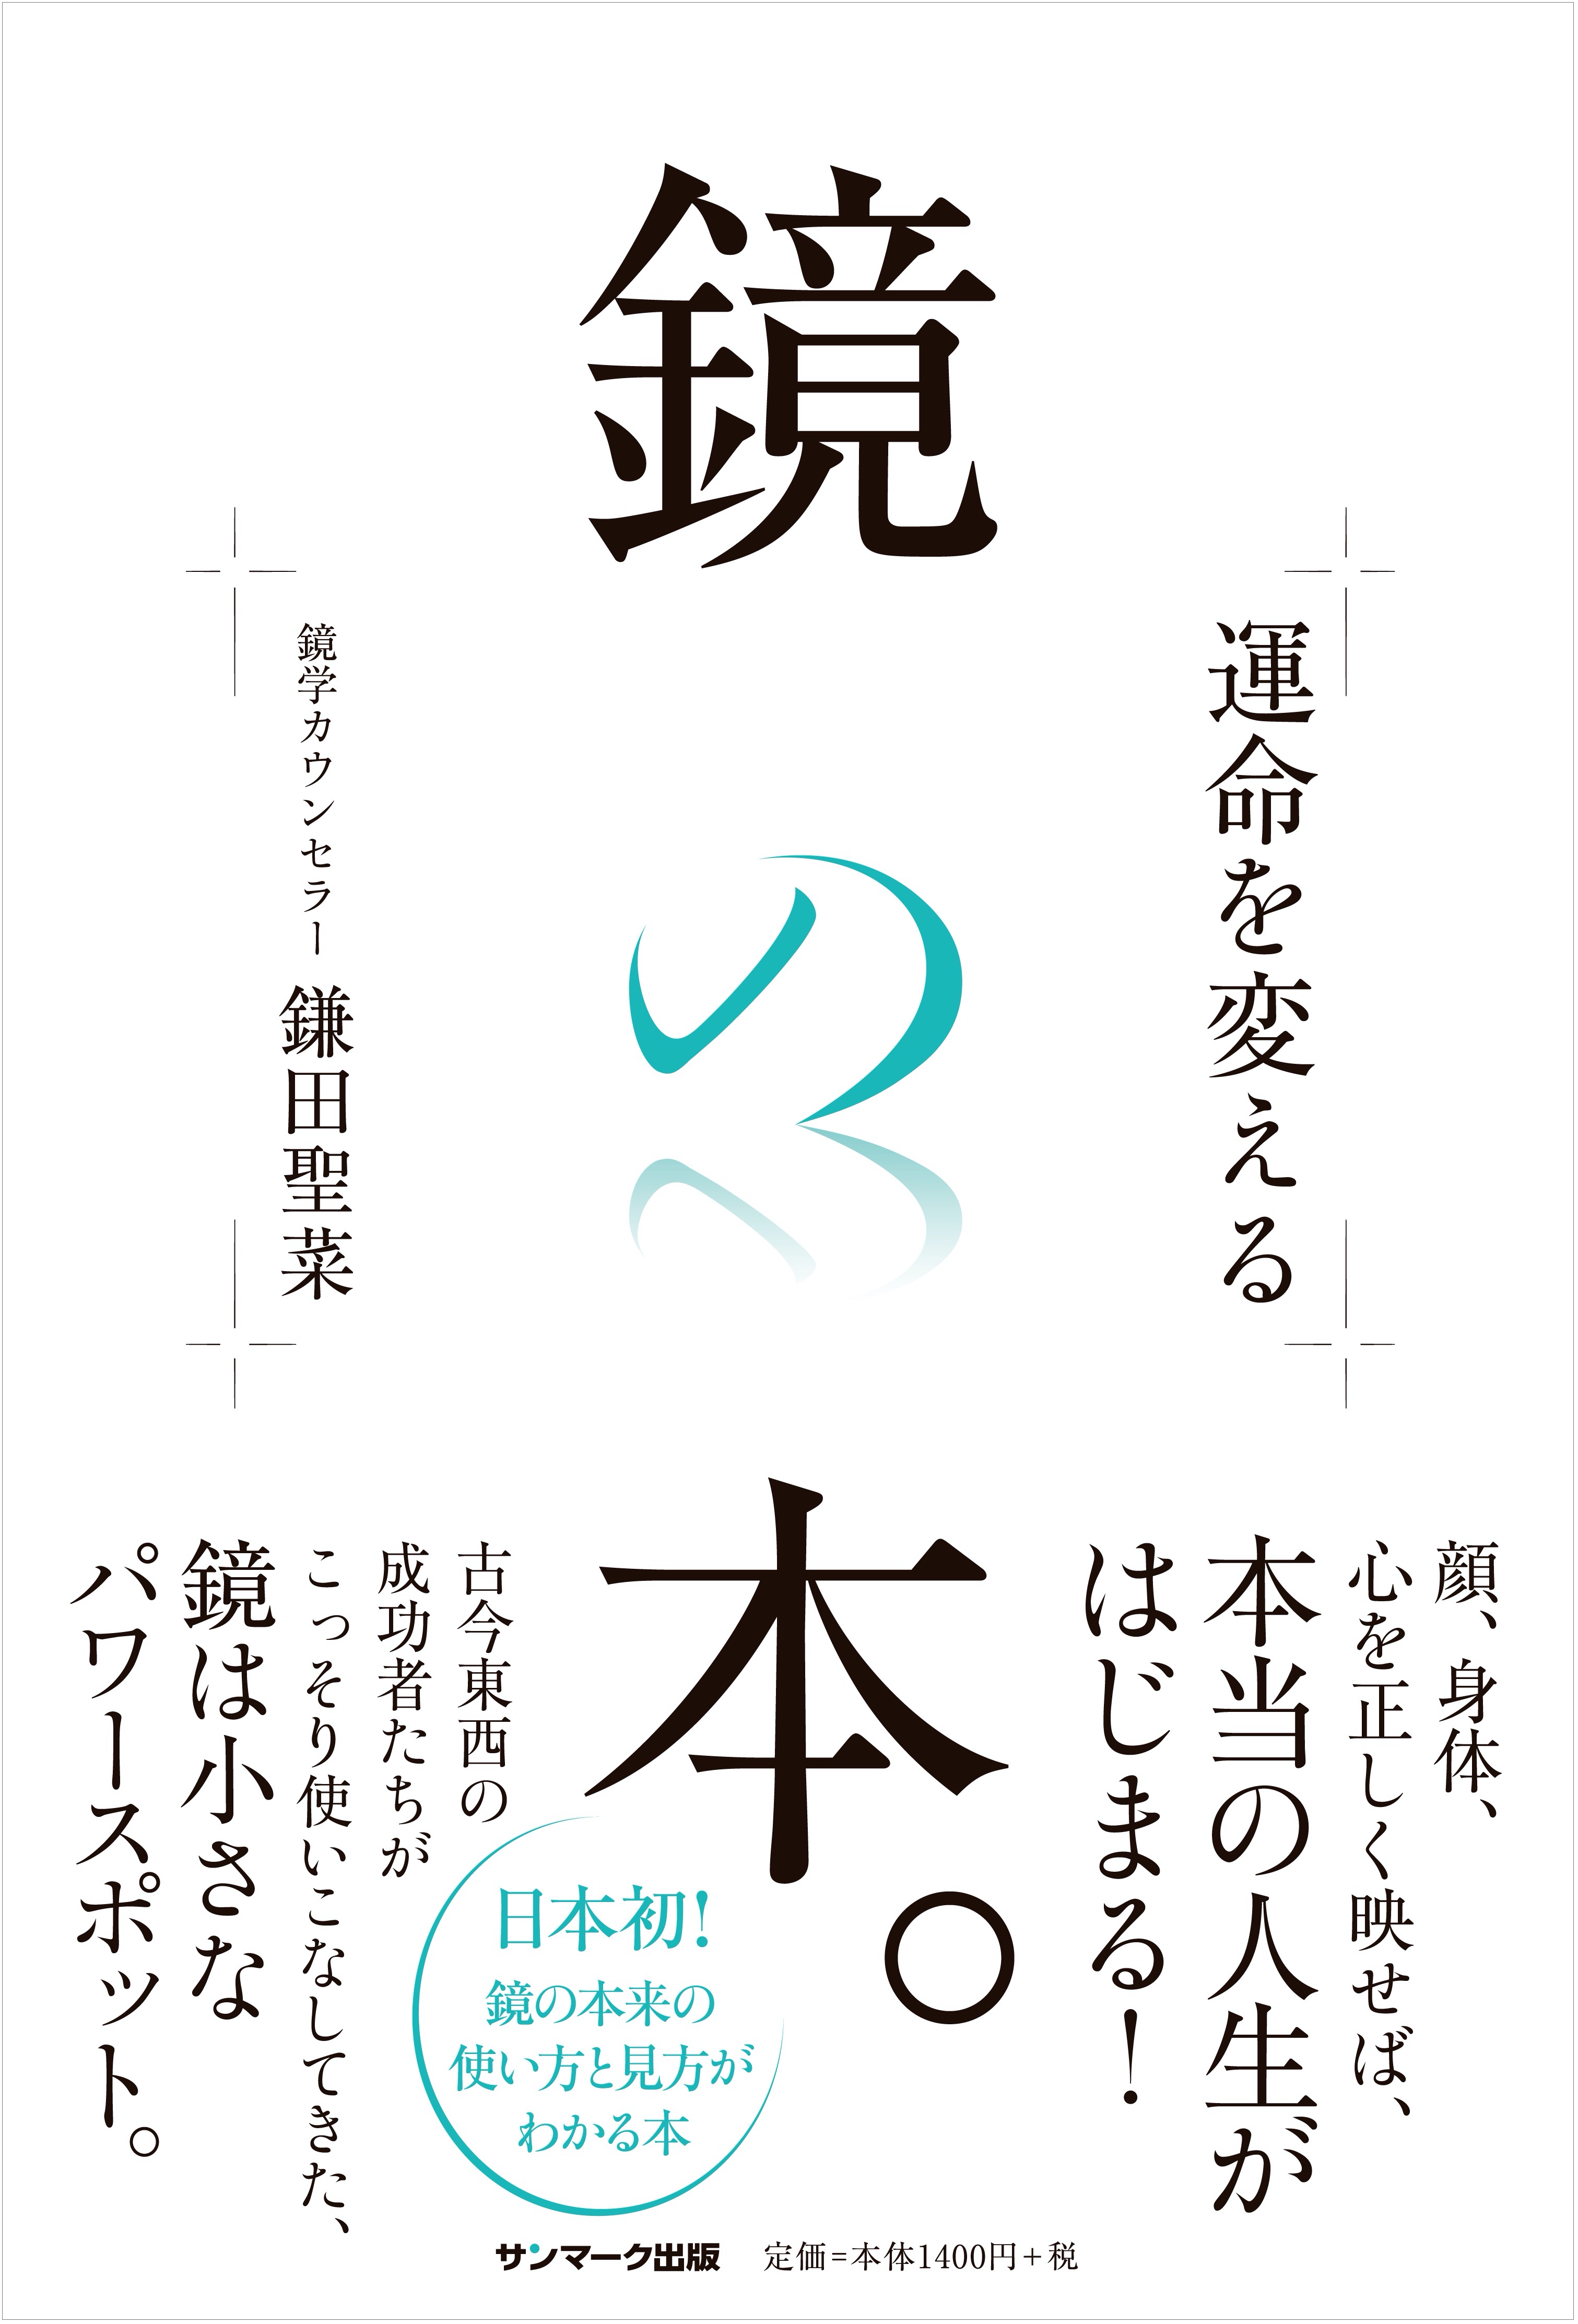 コロナ禍で需要急増中の 鏡 の正しい使い方がわかる日本初の本 運命を変える鏡の本 12月8日発売 株式会社サンマーク出版のプレスリリース